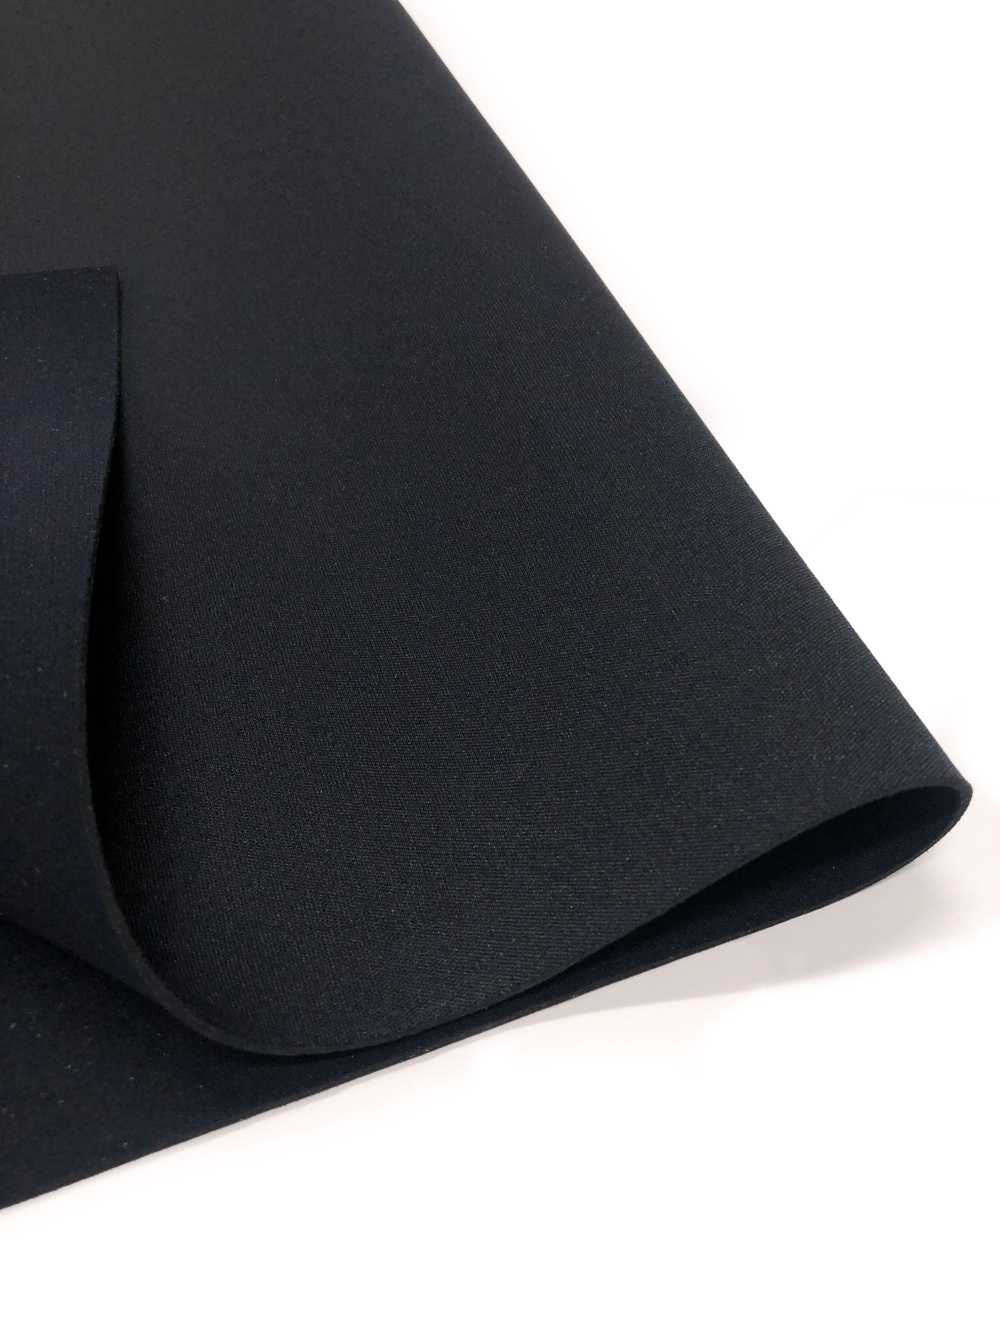 31188 HM AL Black/PS Black 95 × 170cm[Textile / Fabric] Tortoise